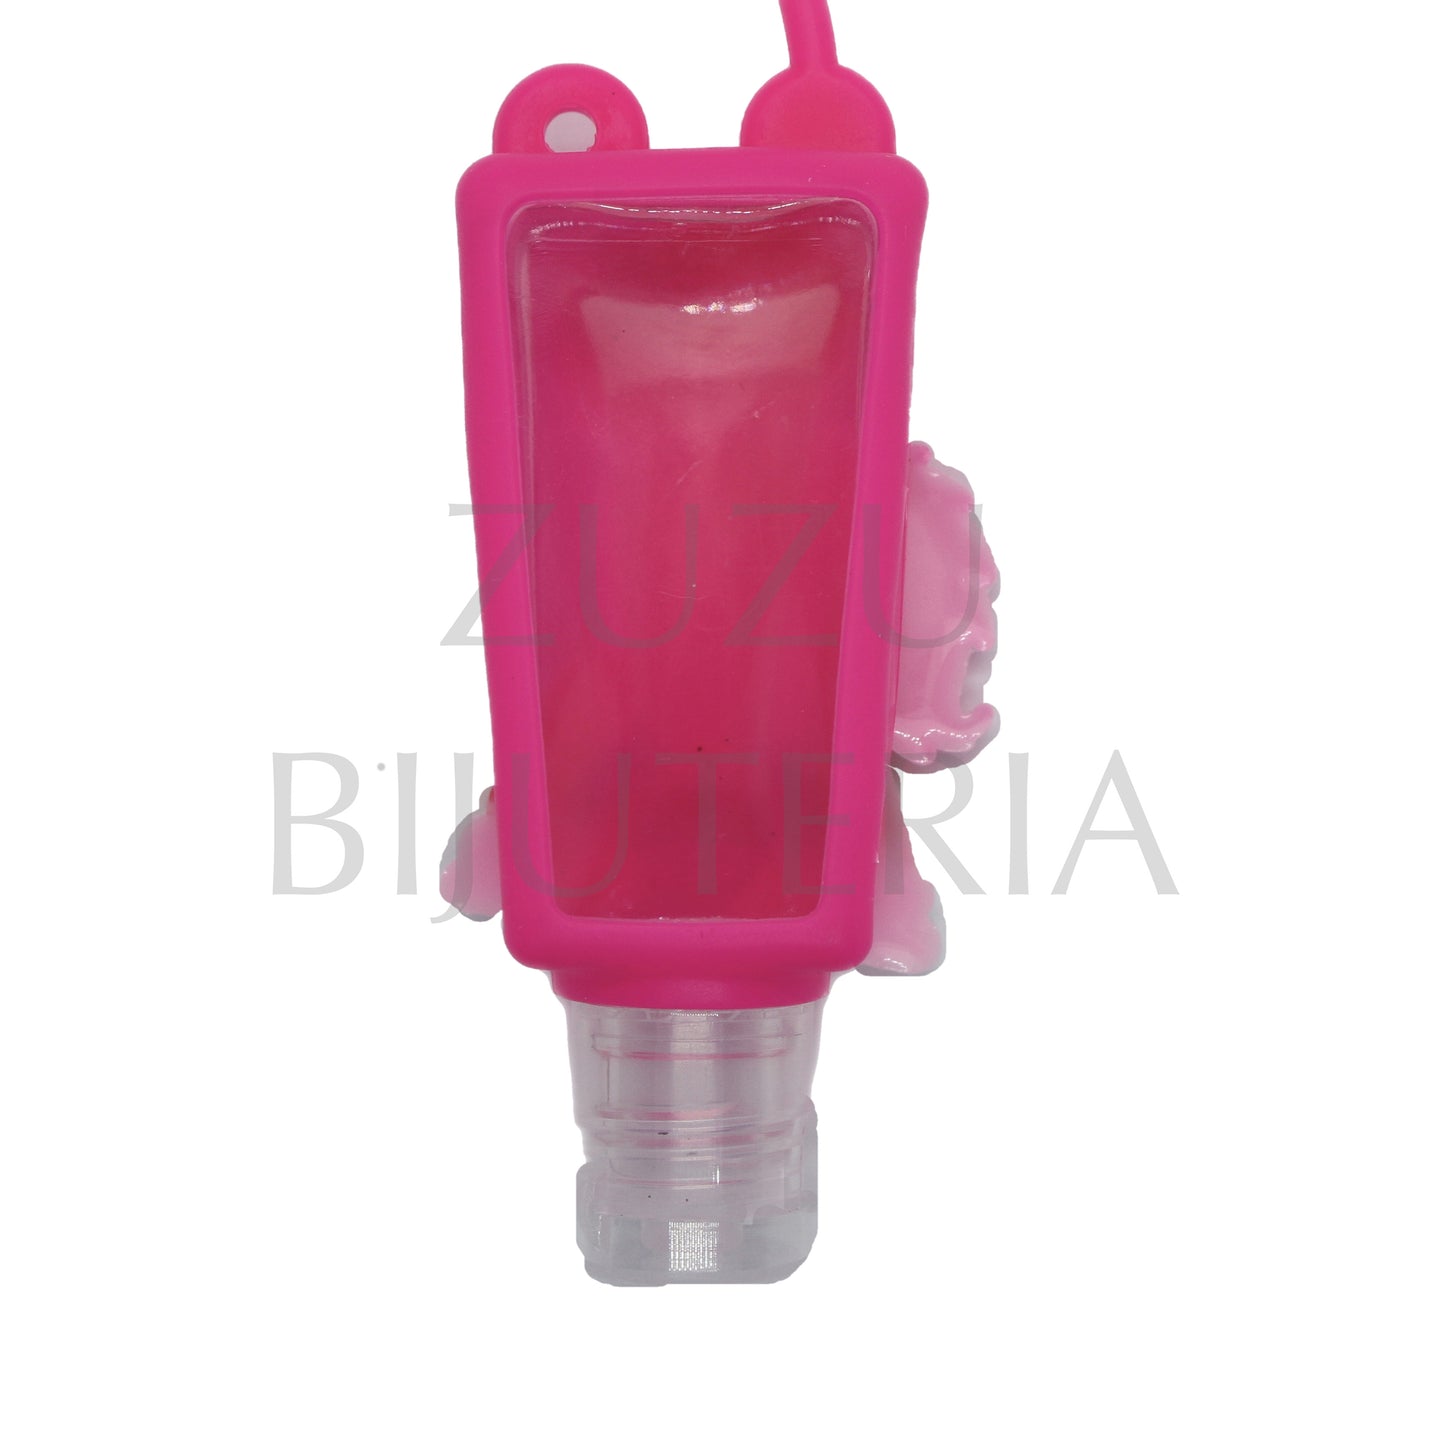 Frasco 35ml para Gel Desinfetante 78mm x 30mm - Rosa Neon